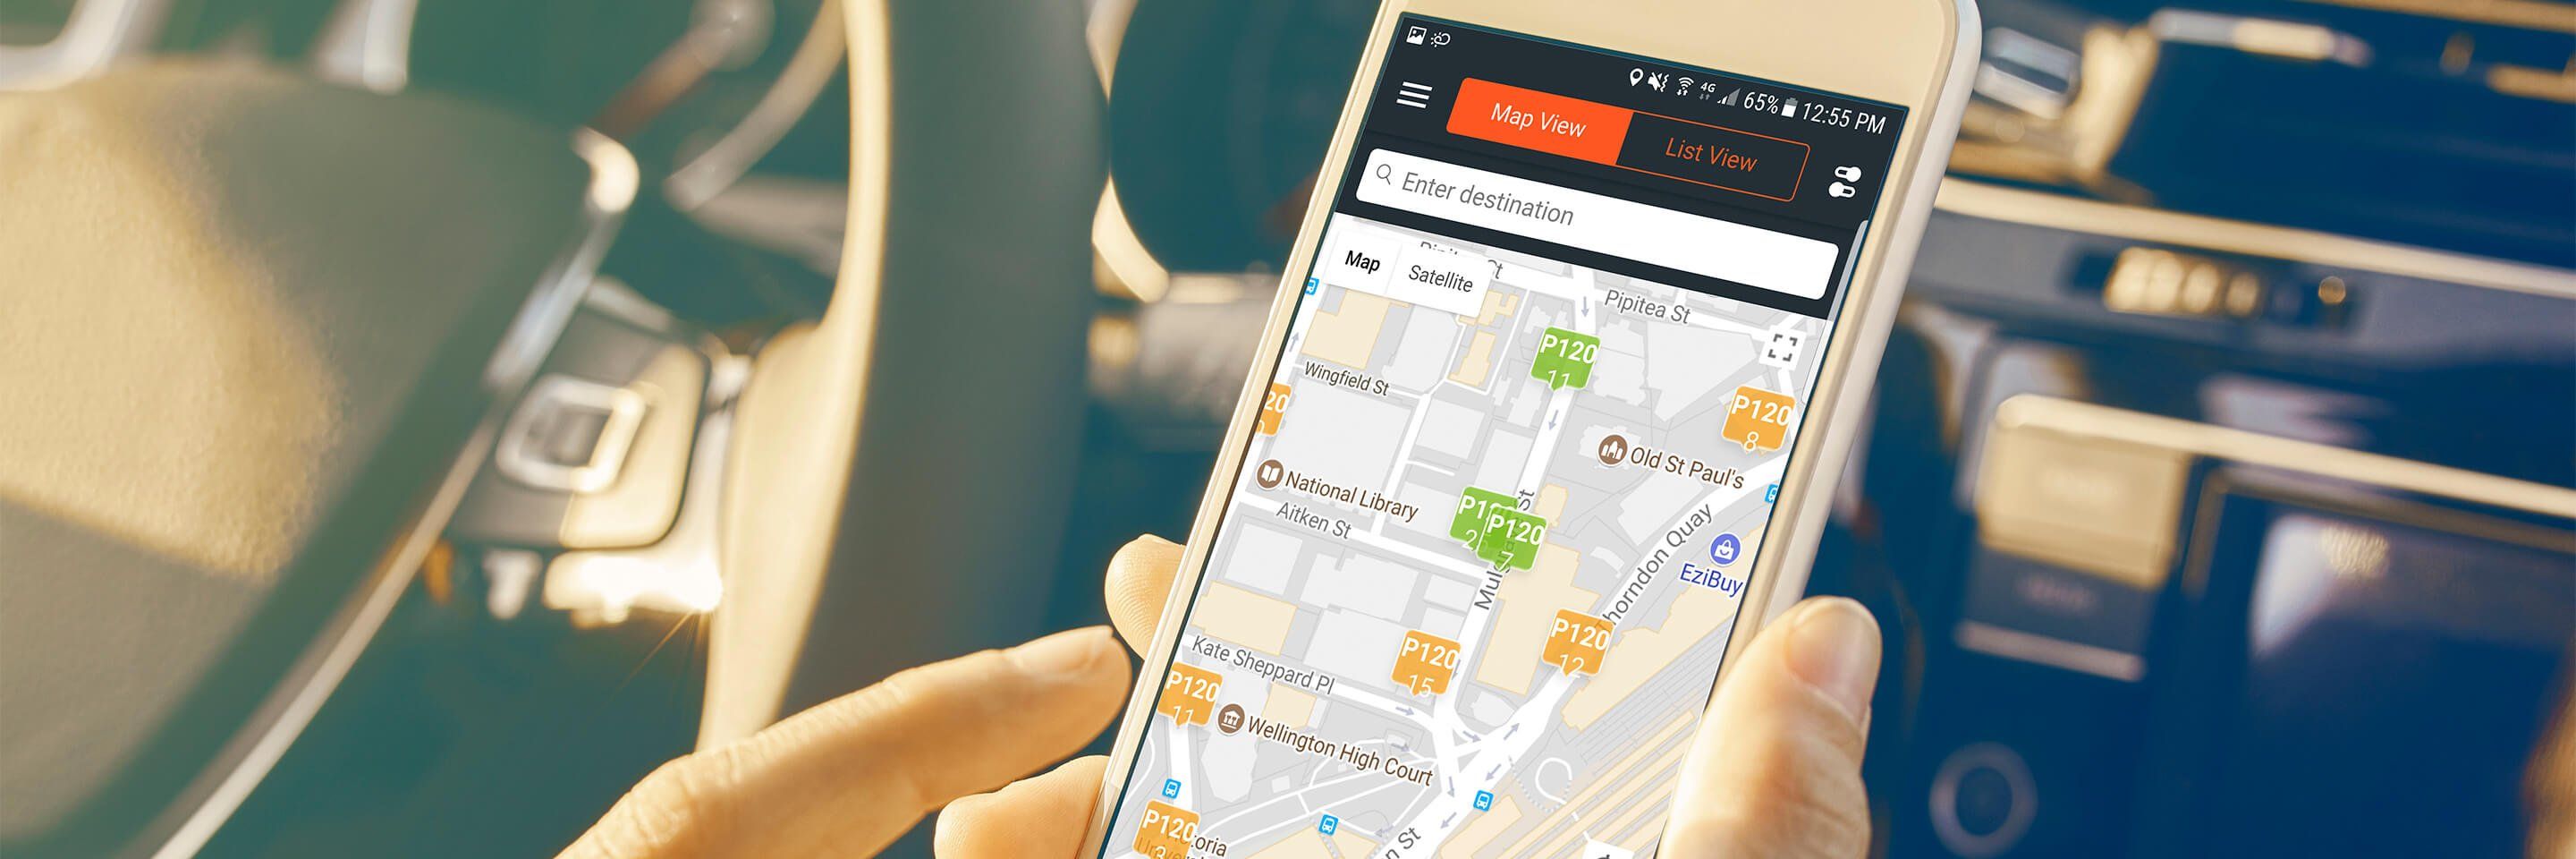 Smart Parking mobile app